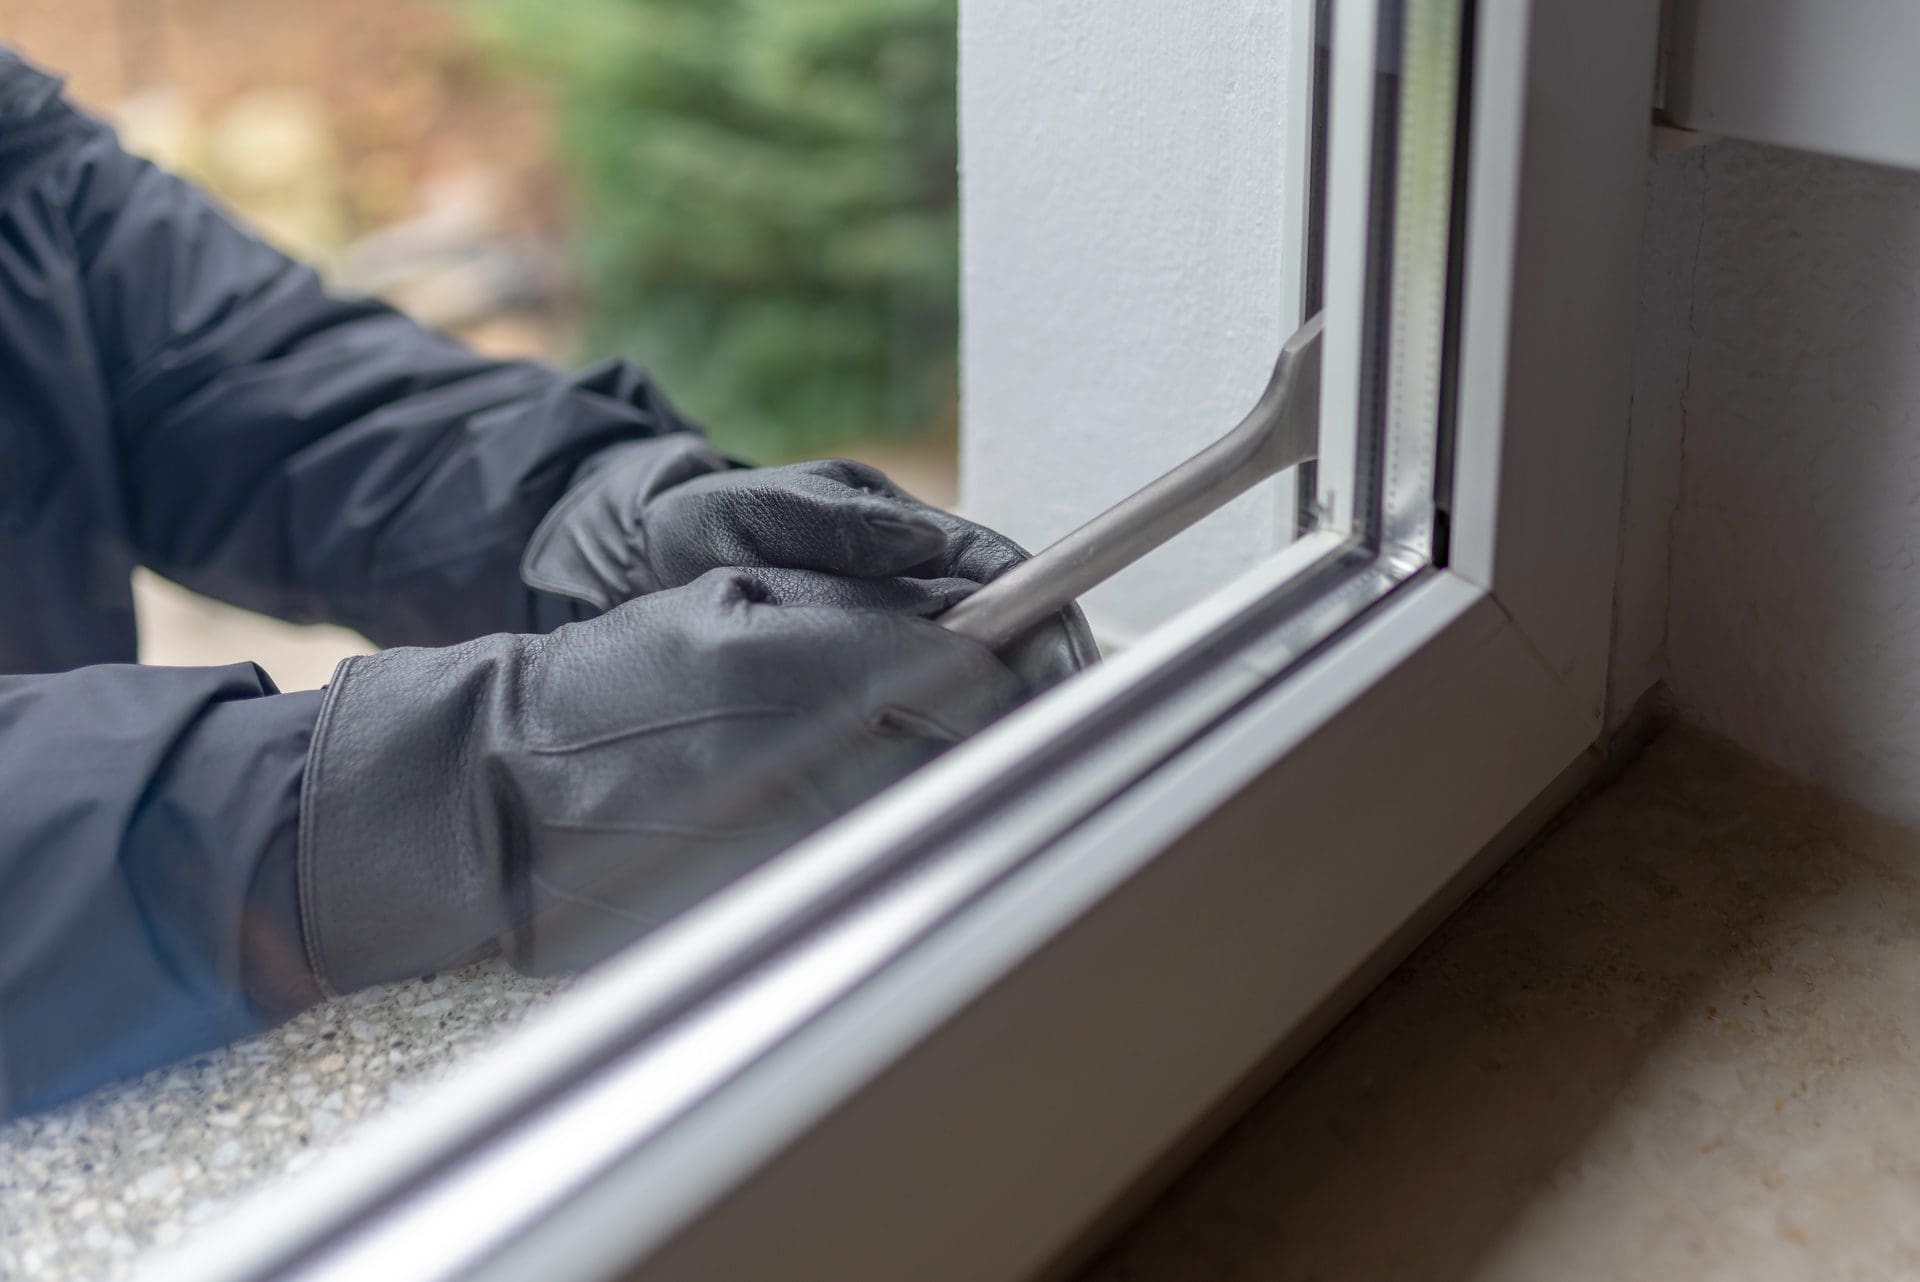 Hochwertige, einbruchshemmende Fenster sind sicherlich eine Hürde gegen Einbrecher, eine Garantie sind sie jedoch nicht. Fast alles lässt sich früher oder später aufhebeln, mit teilweise gravierenden Einbruchschäden (© js-photo / stock.adobe.com)